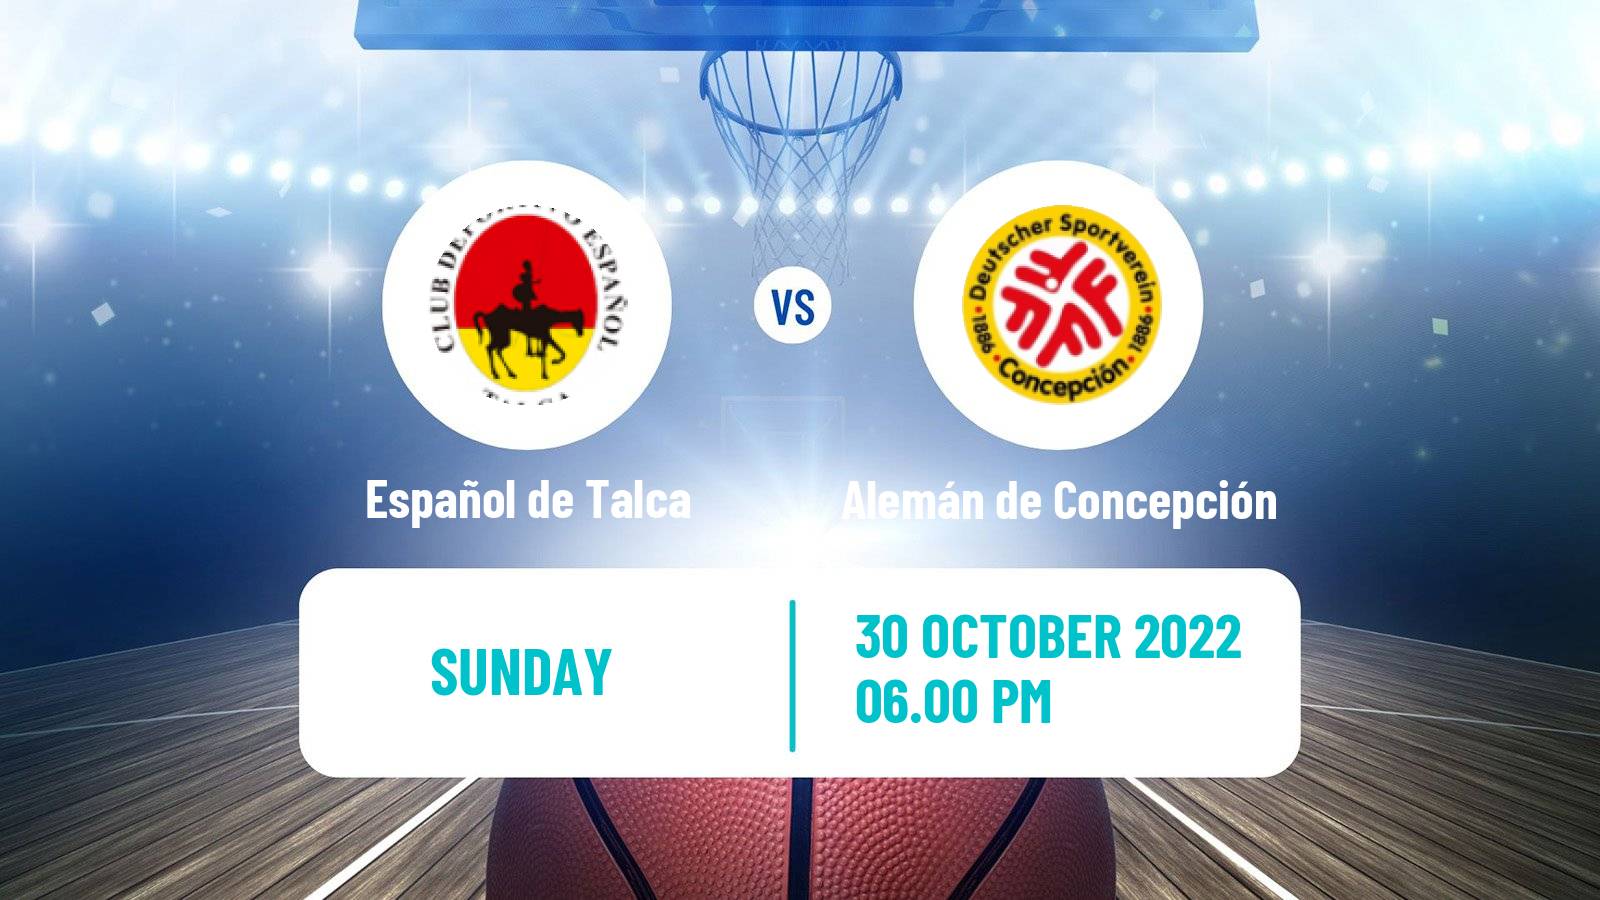 Basketball Chilean Copa Basketball Español de Talca - Alemán de Concepción